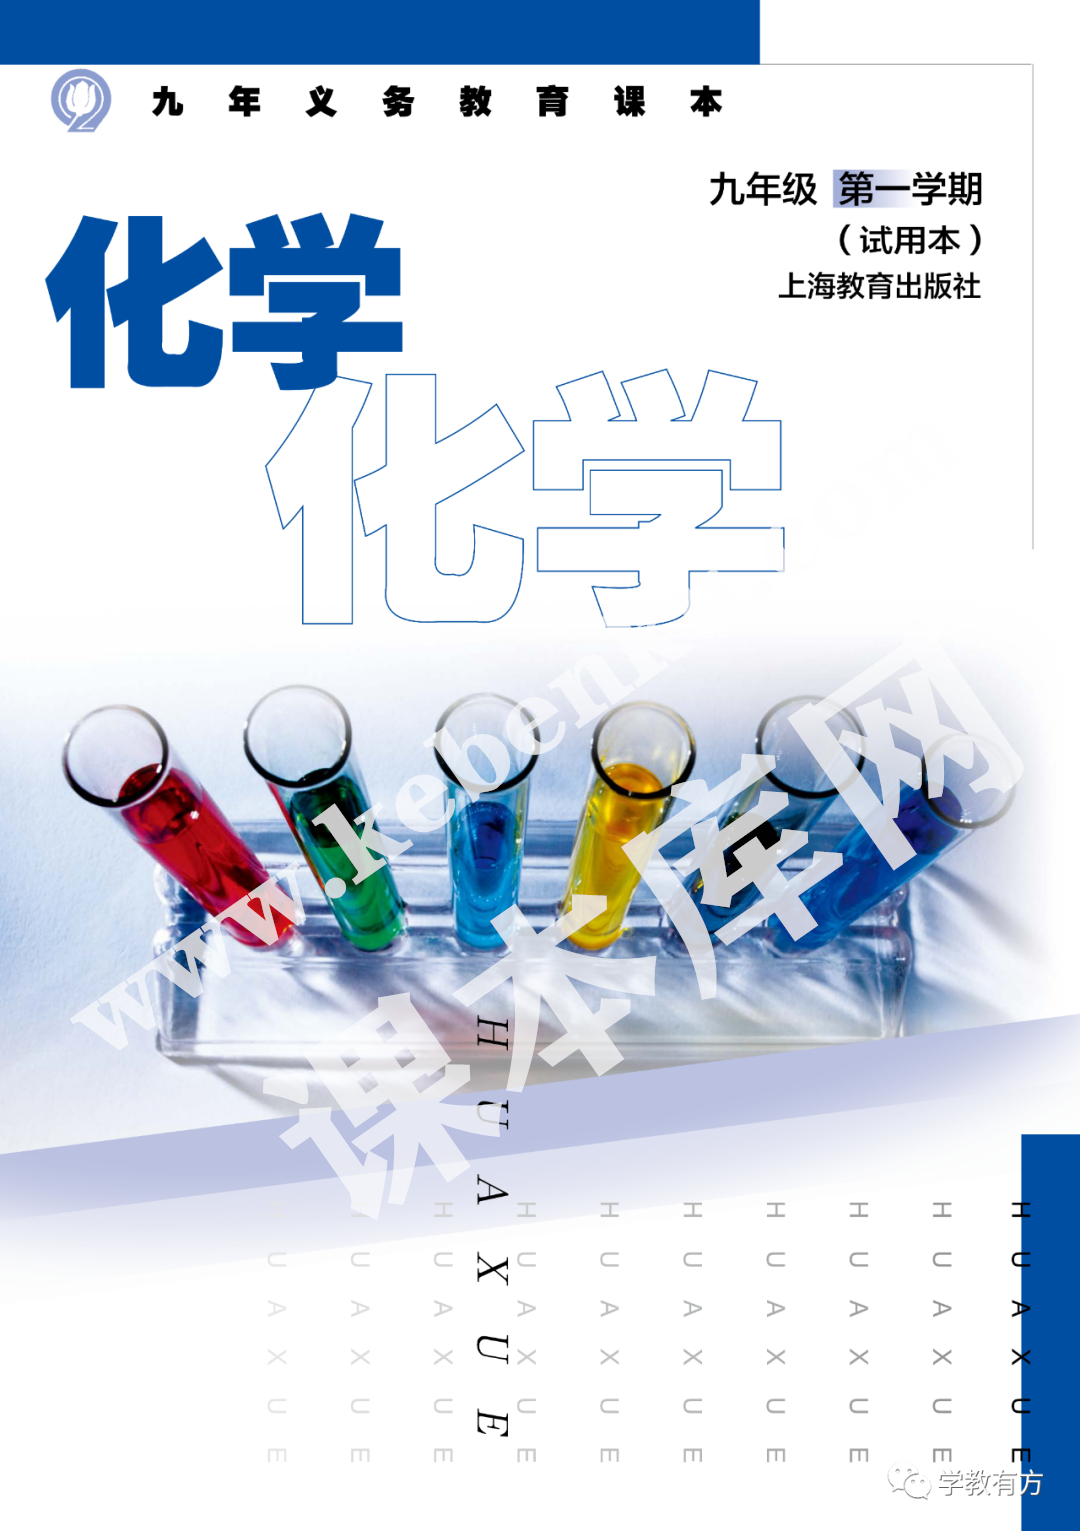 上海教育出版社义务教育标准实验教科书九年级化学上册(2001版)电子课本